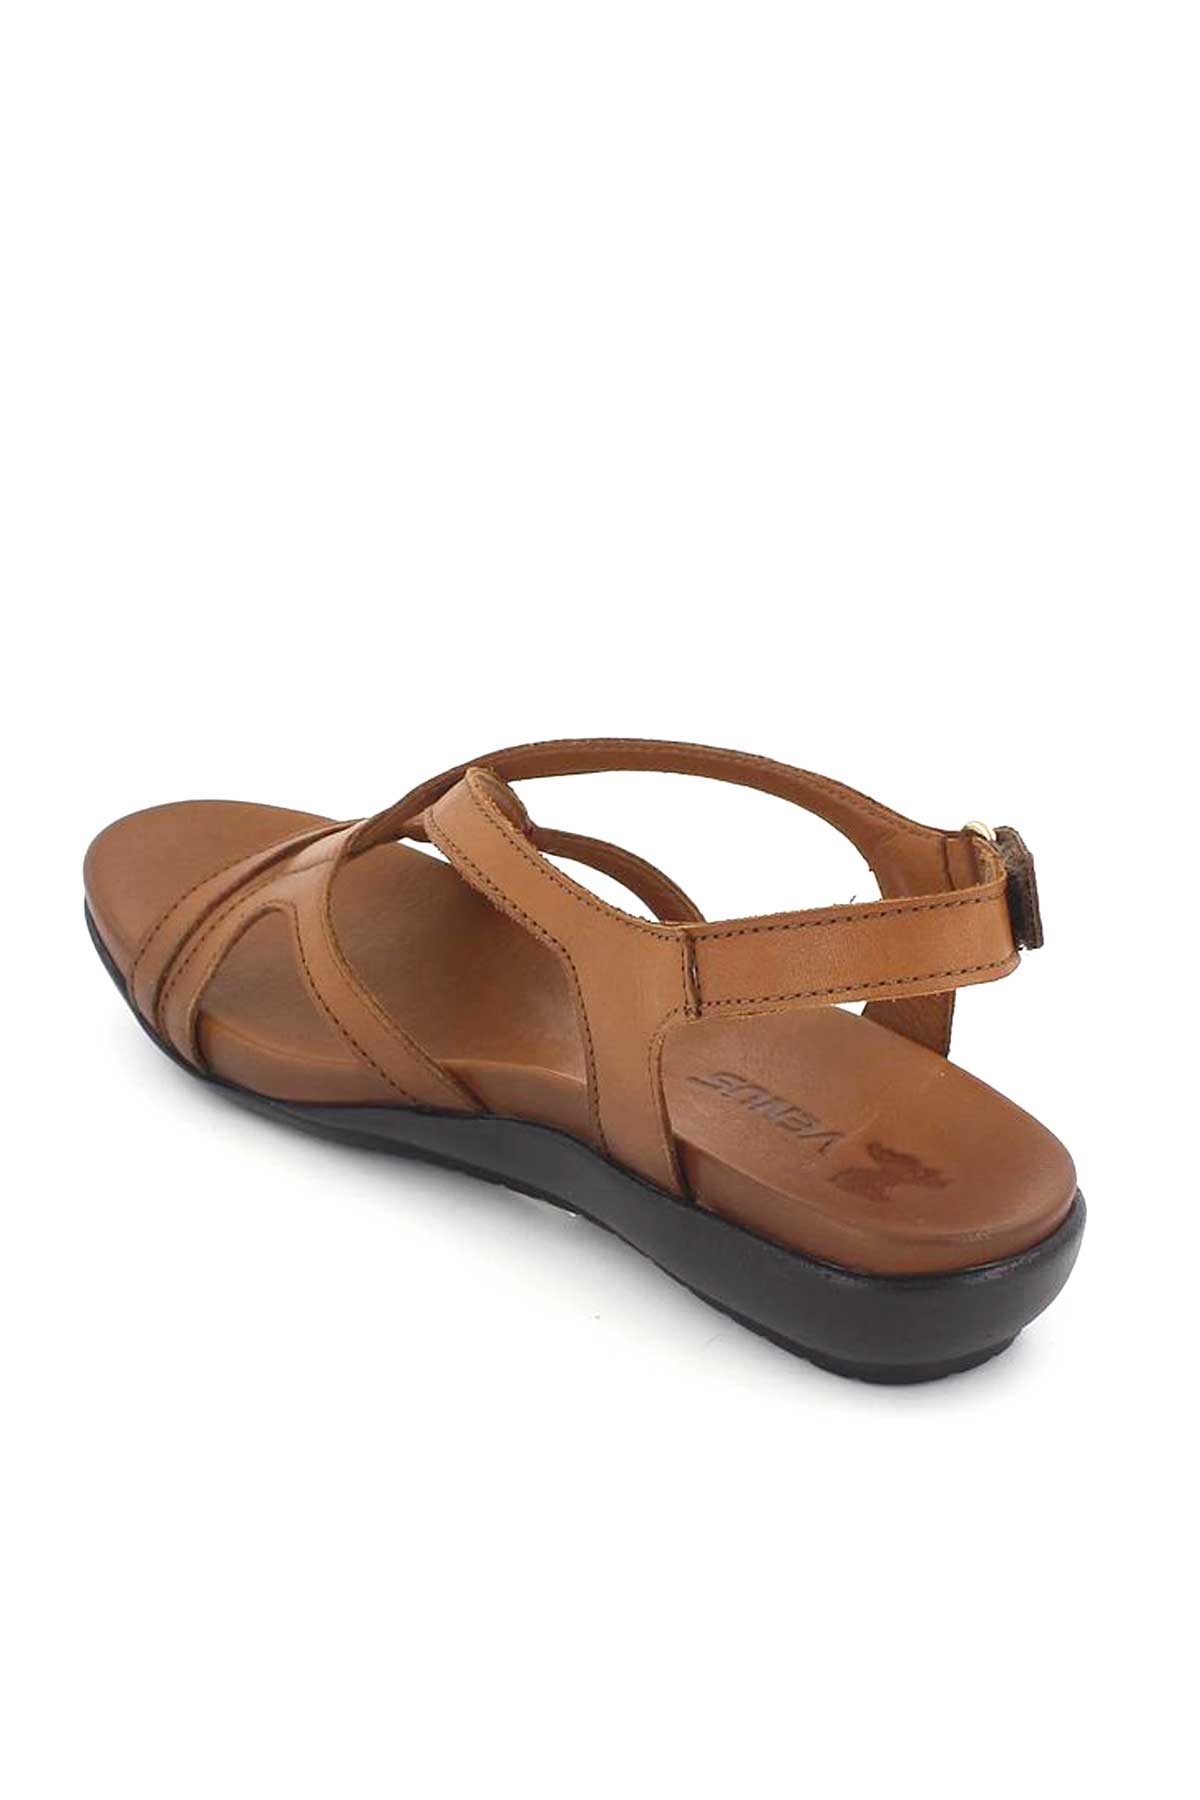 Kadın Comfort Sandalet Taba 206Y